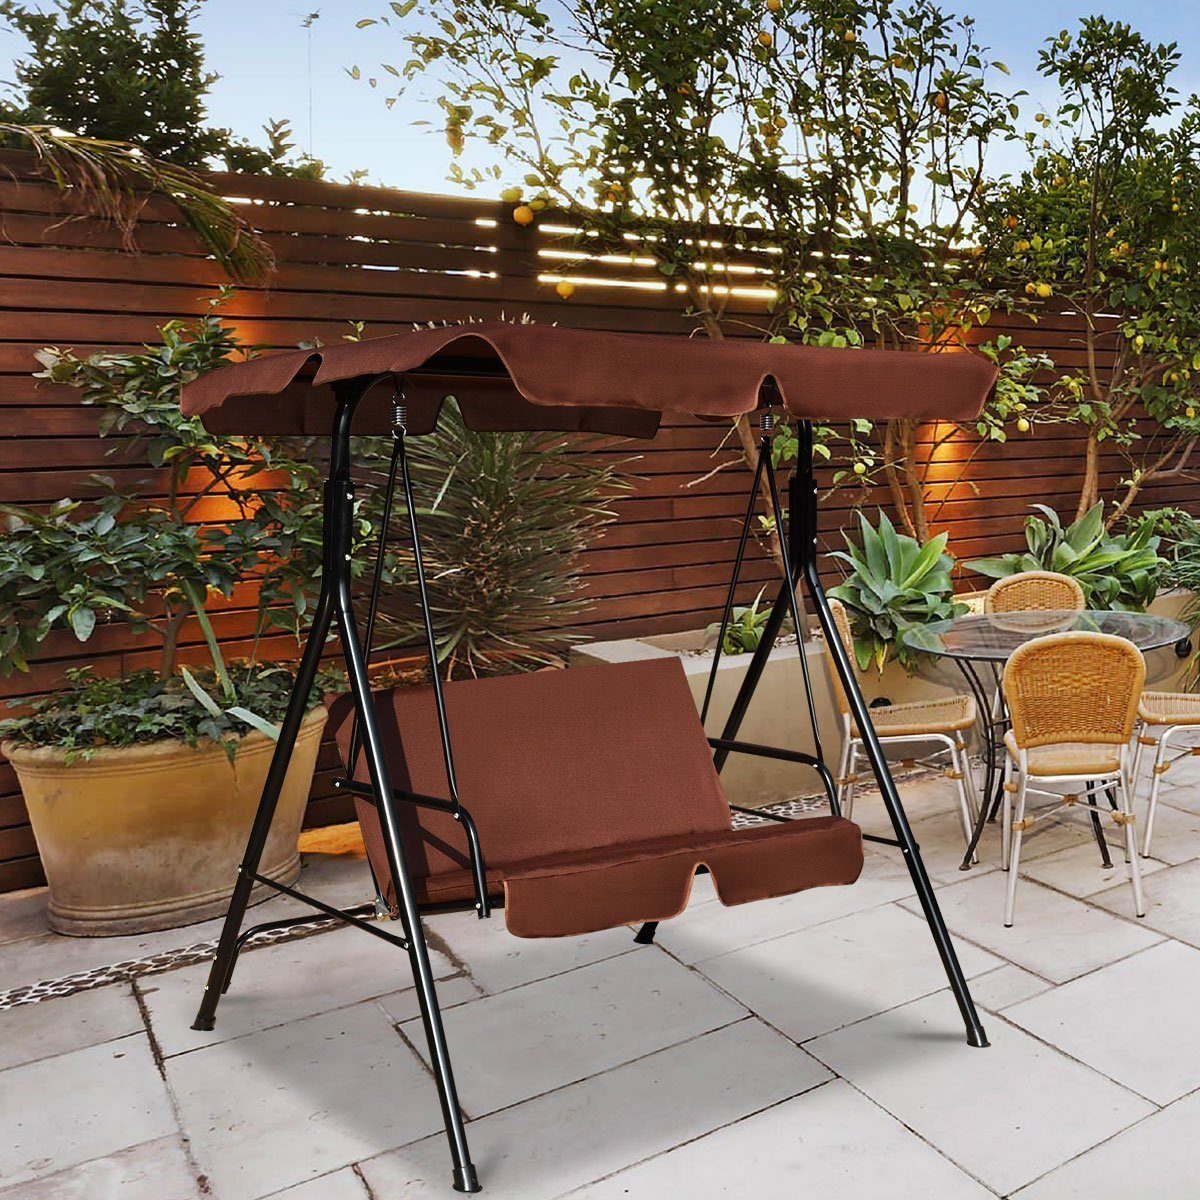 COSTWAY Hollywoodschaukel Gartenschaukel, Braun mit 2-Sitzer Gartenliege, Sonnendach